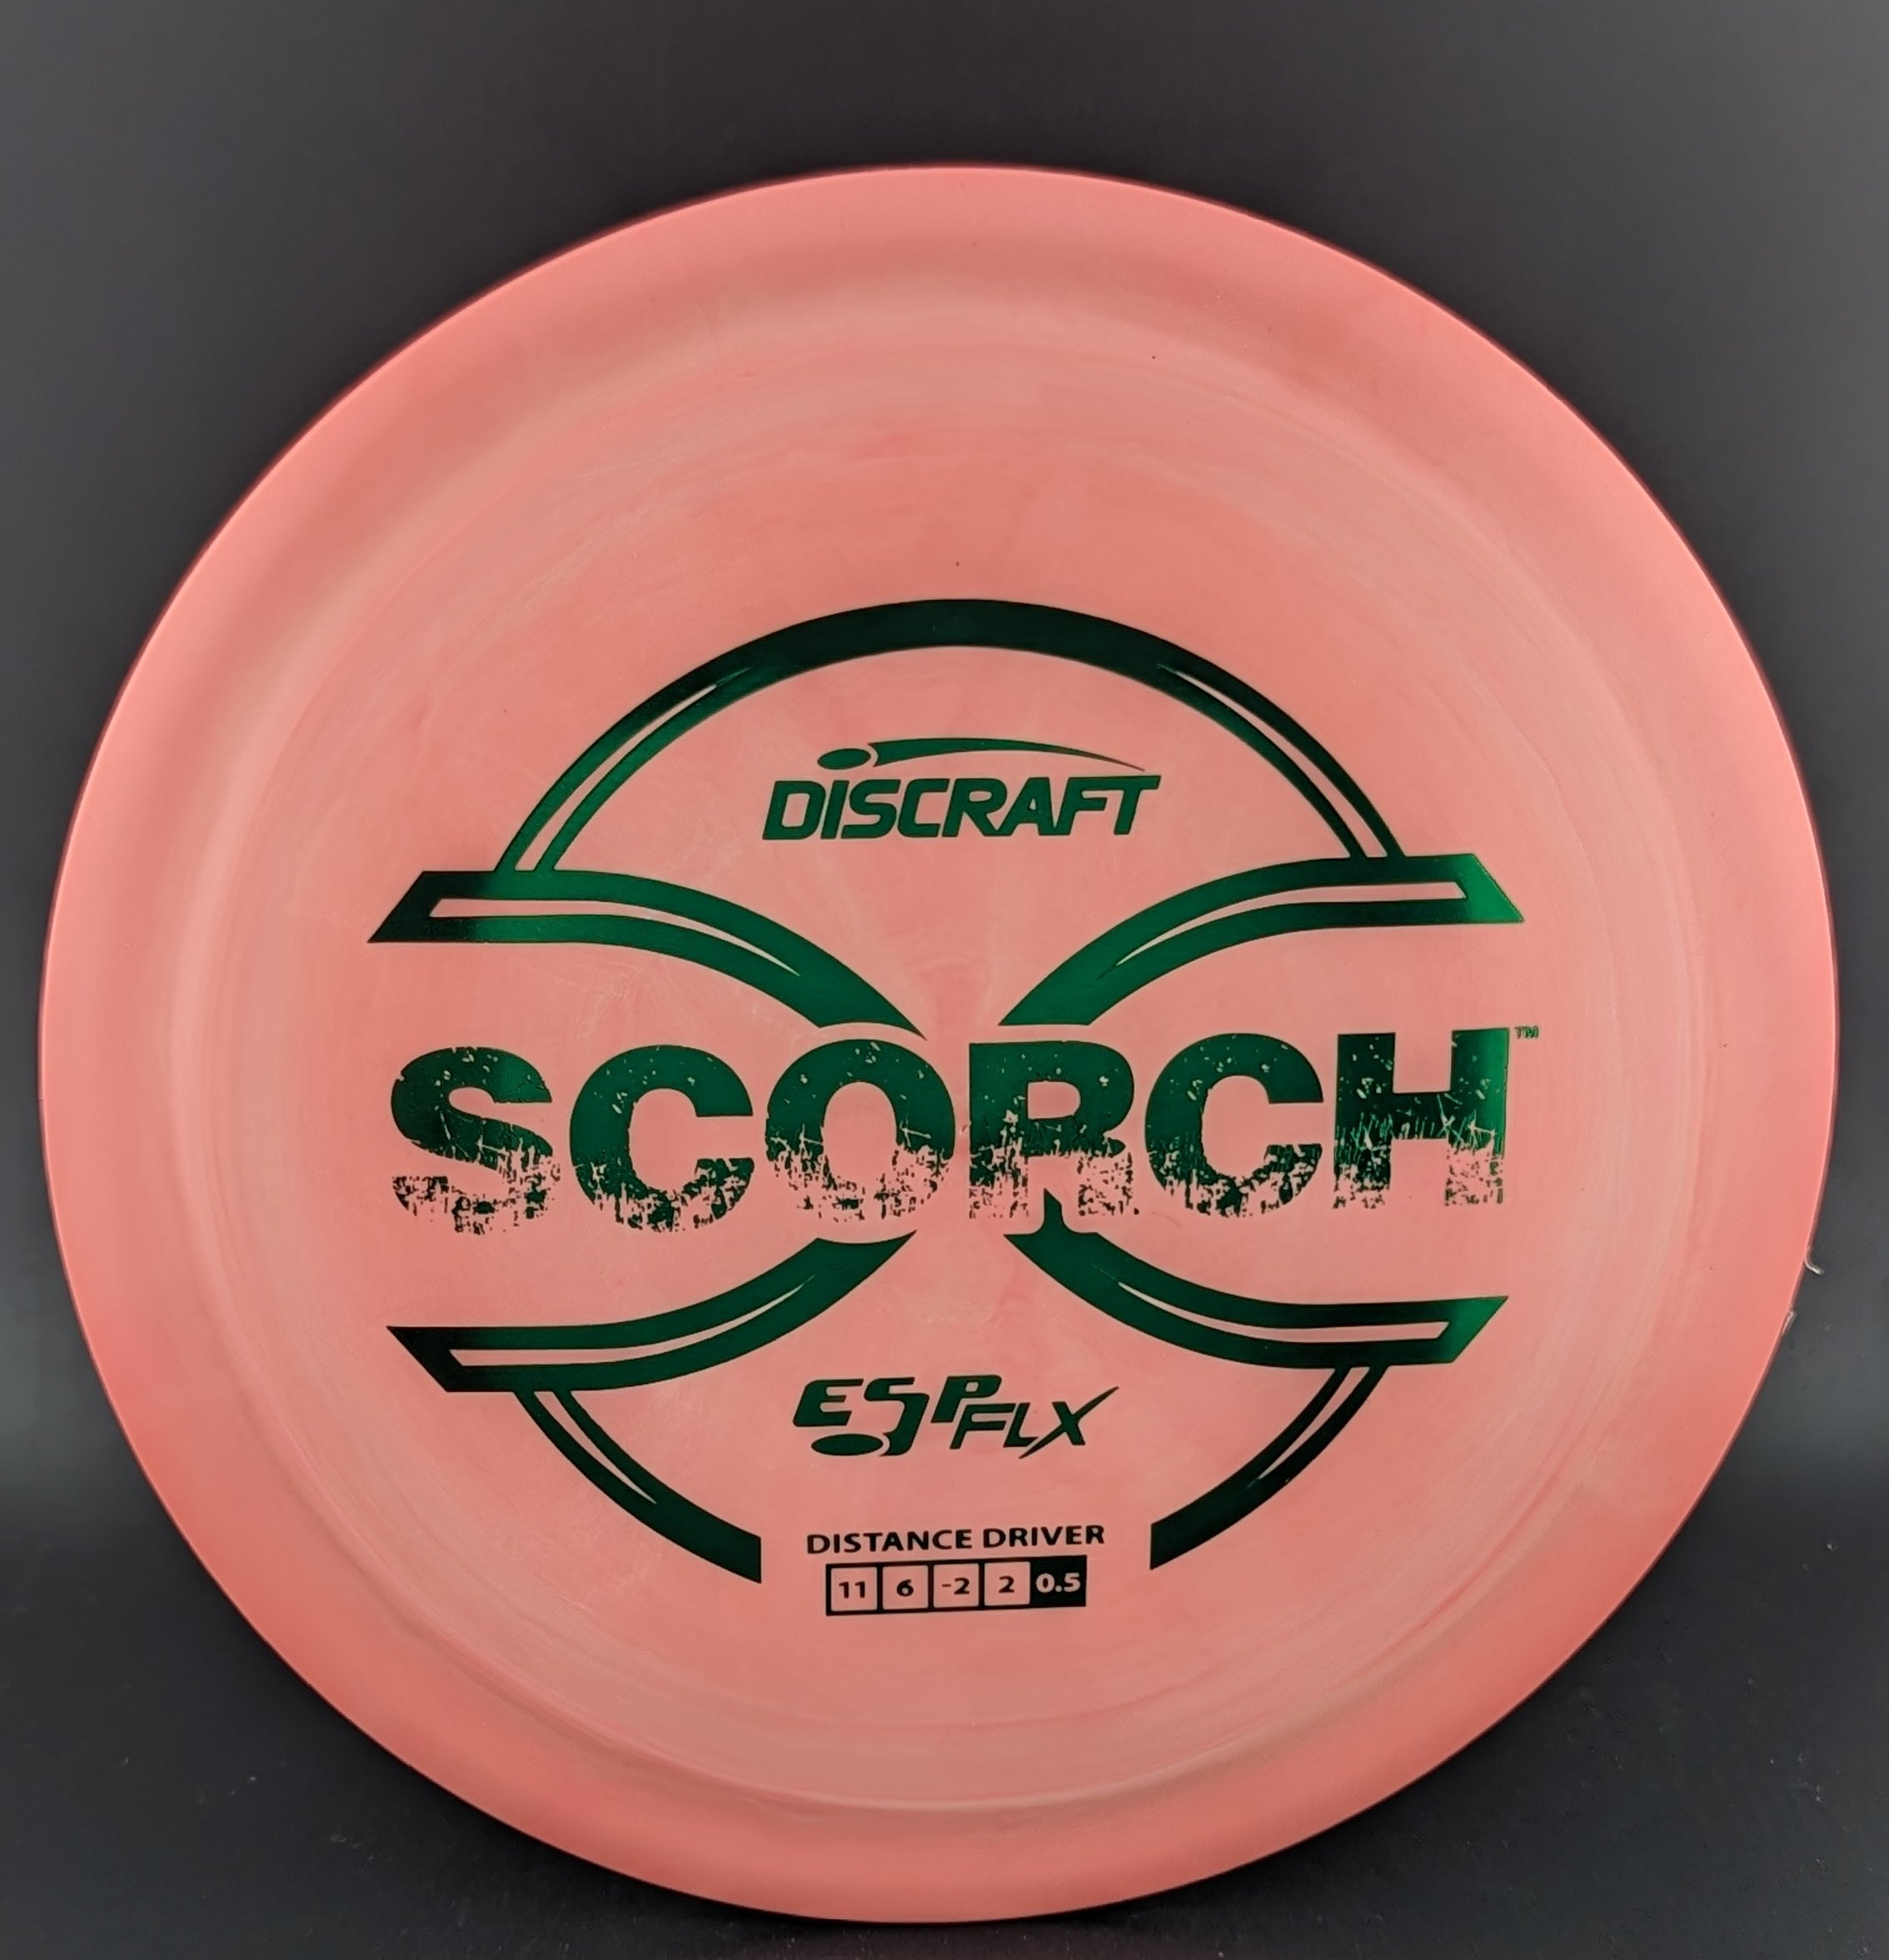 Discraft ESP Flx Scorch - 0